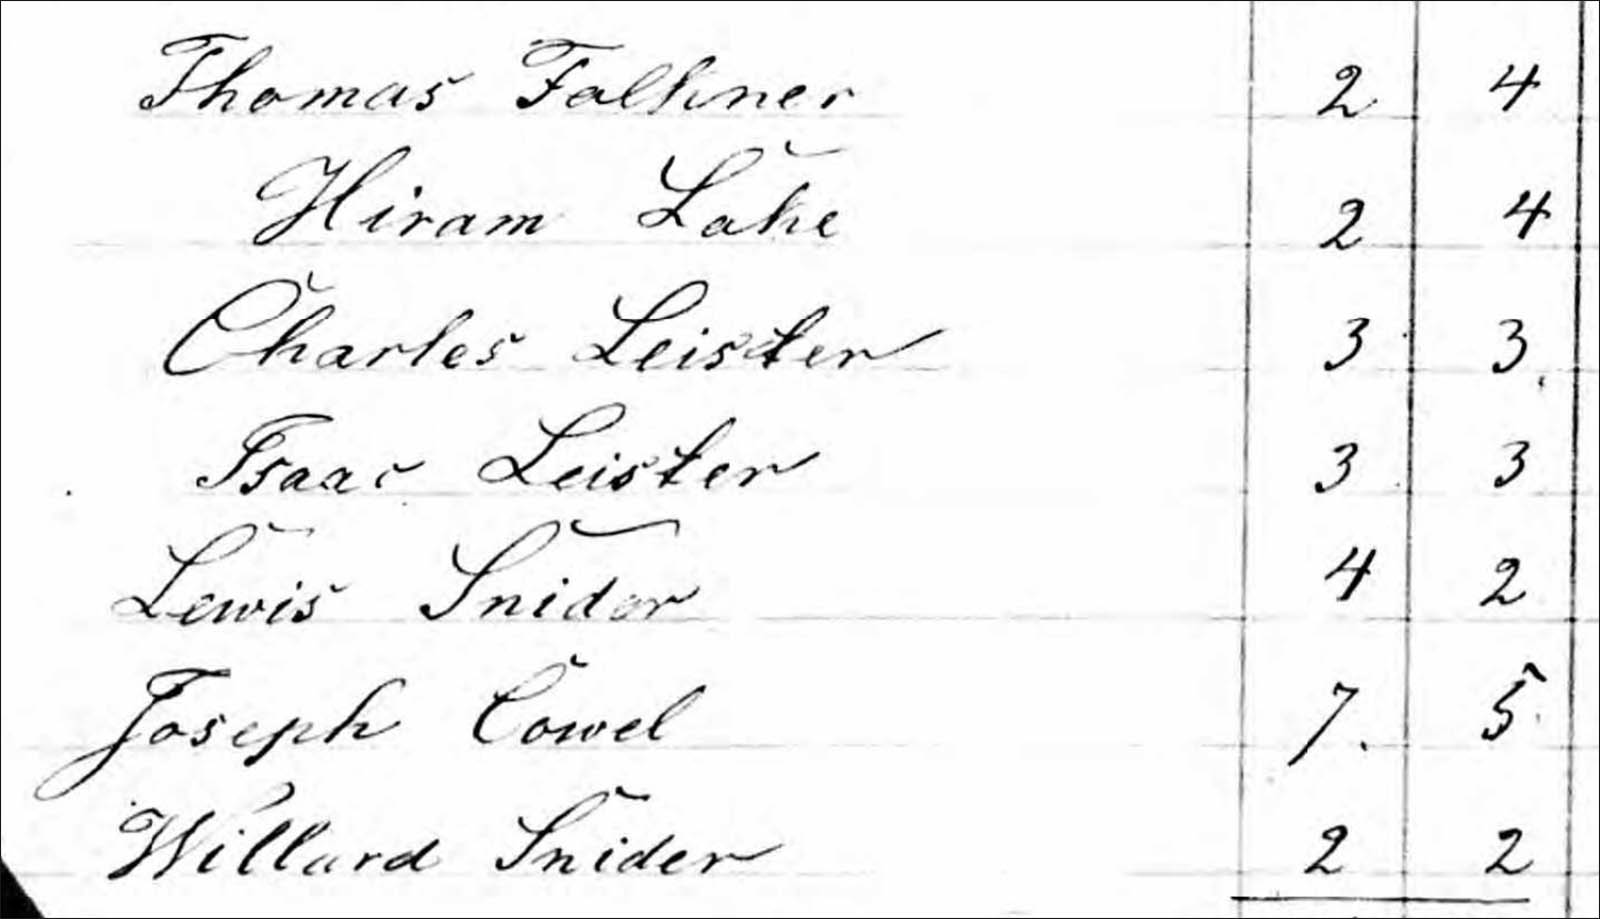 1855 census